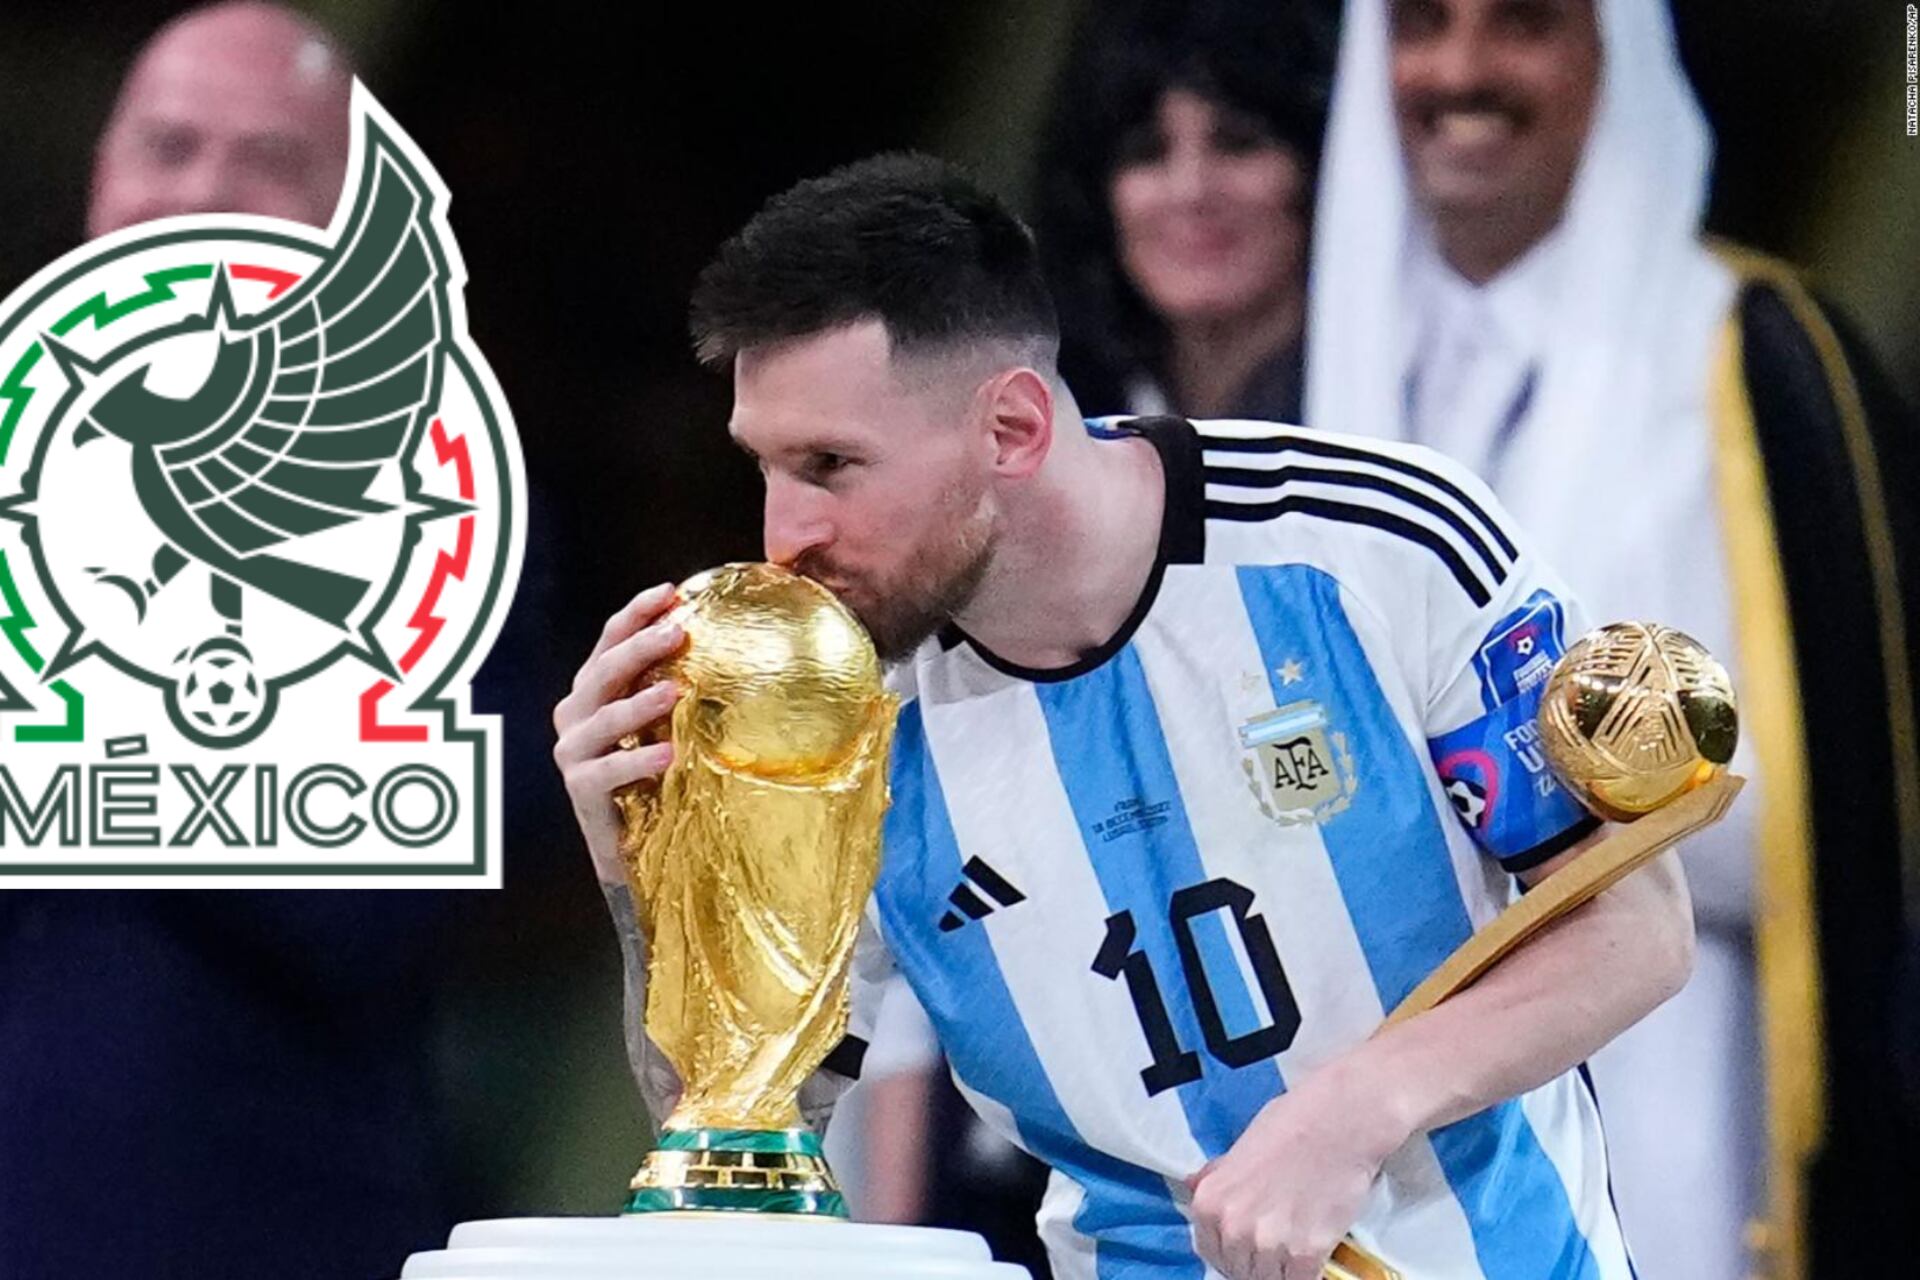 El mexicano que volvió 'grande' a Lionel Messi en Qatar, ahora jugaría juntos en la MLS